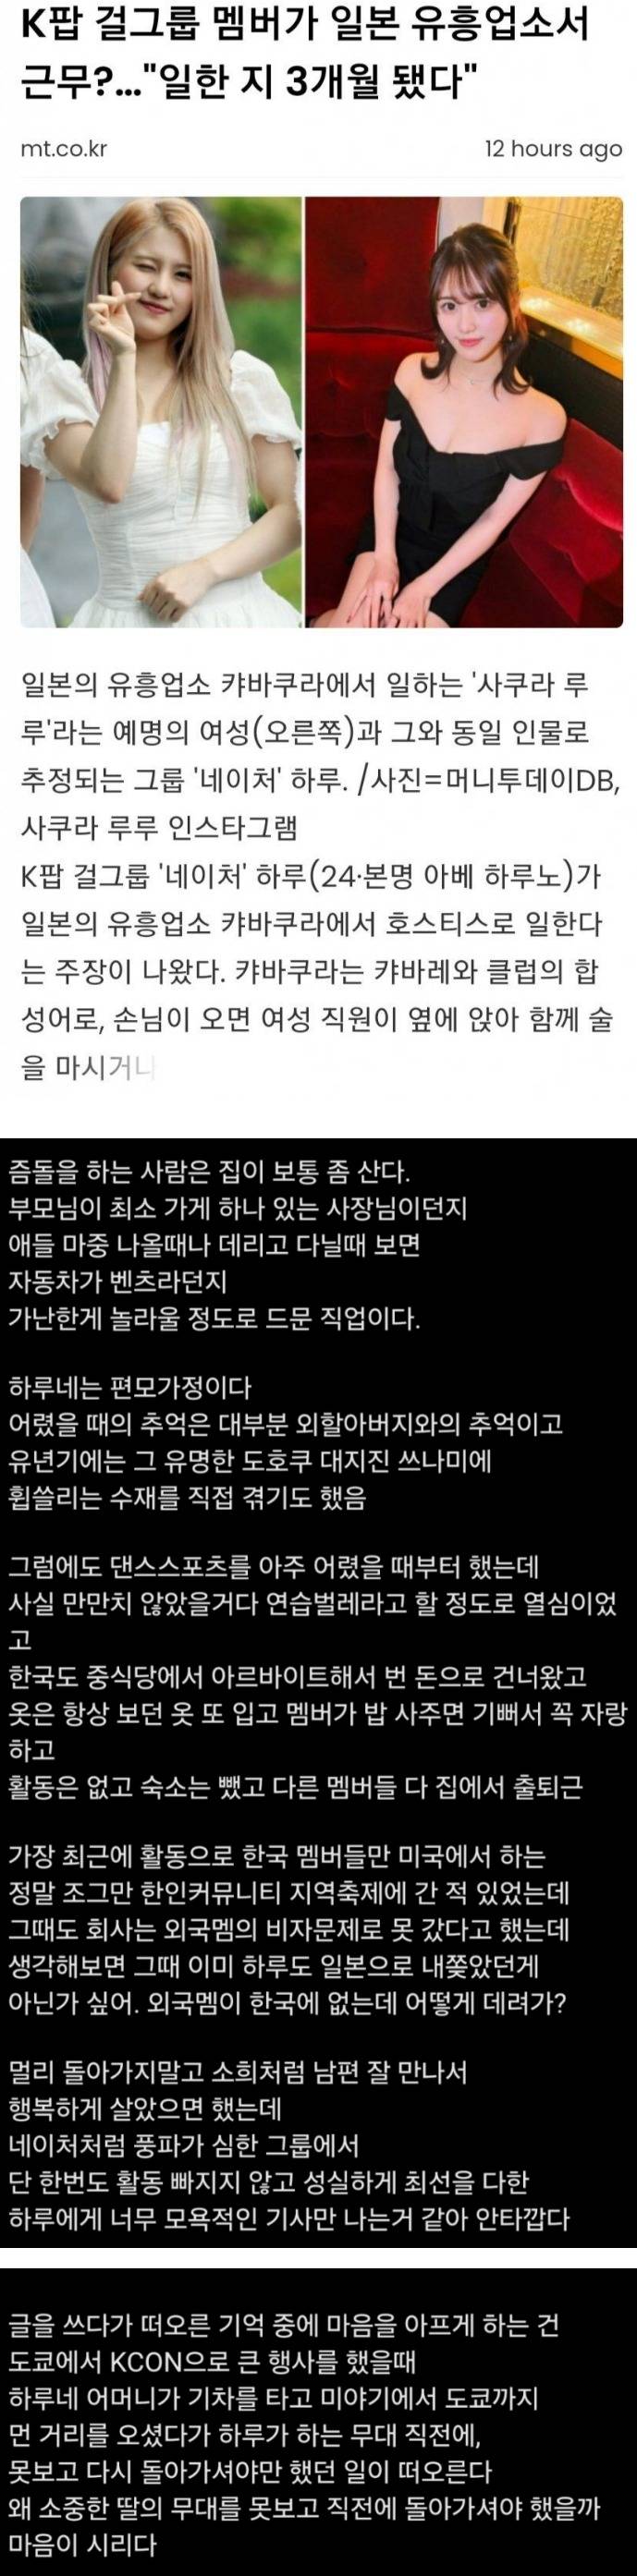 일본 유흥업소에서 일하는 K팝 걸그룹 멤버